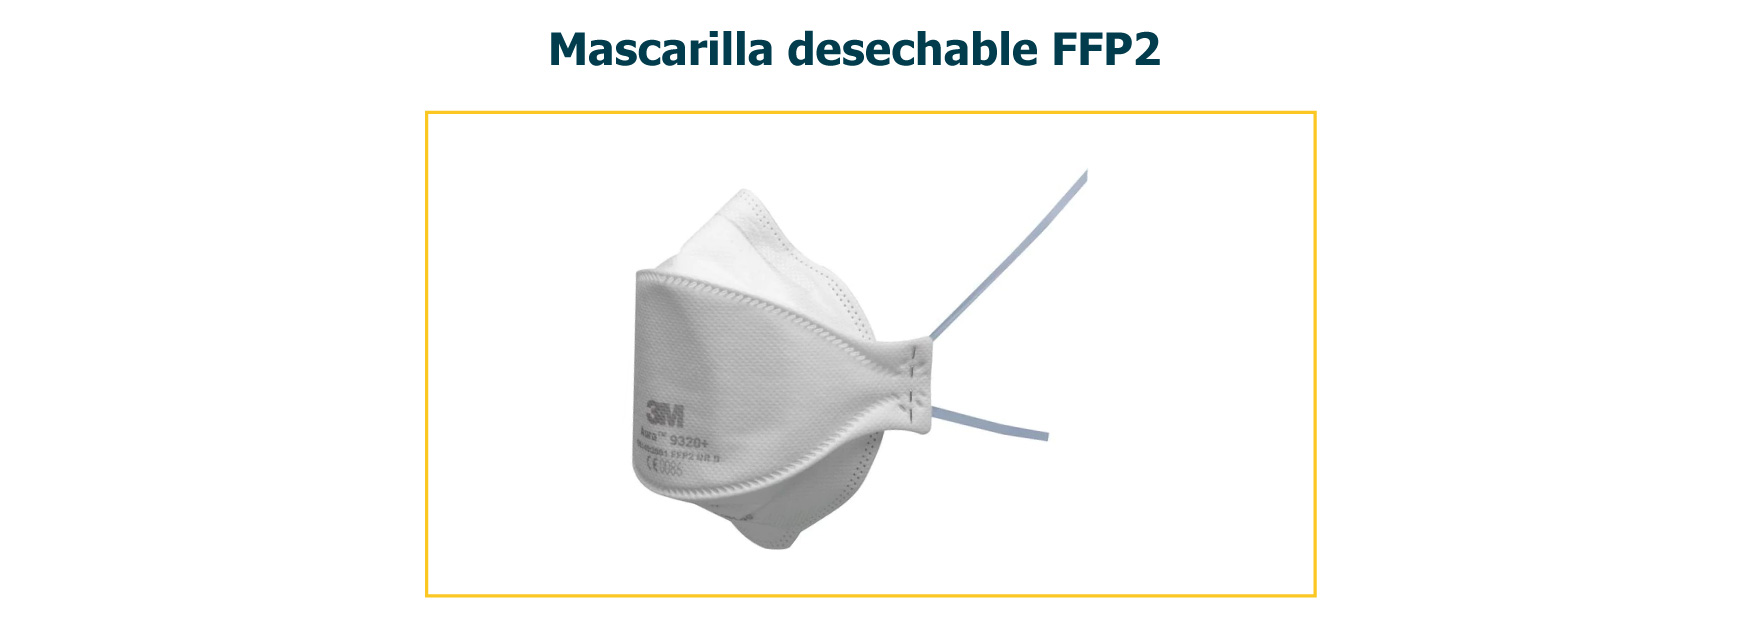 Mascarilla desechable FFP2